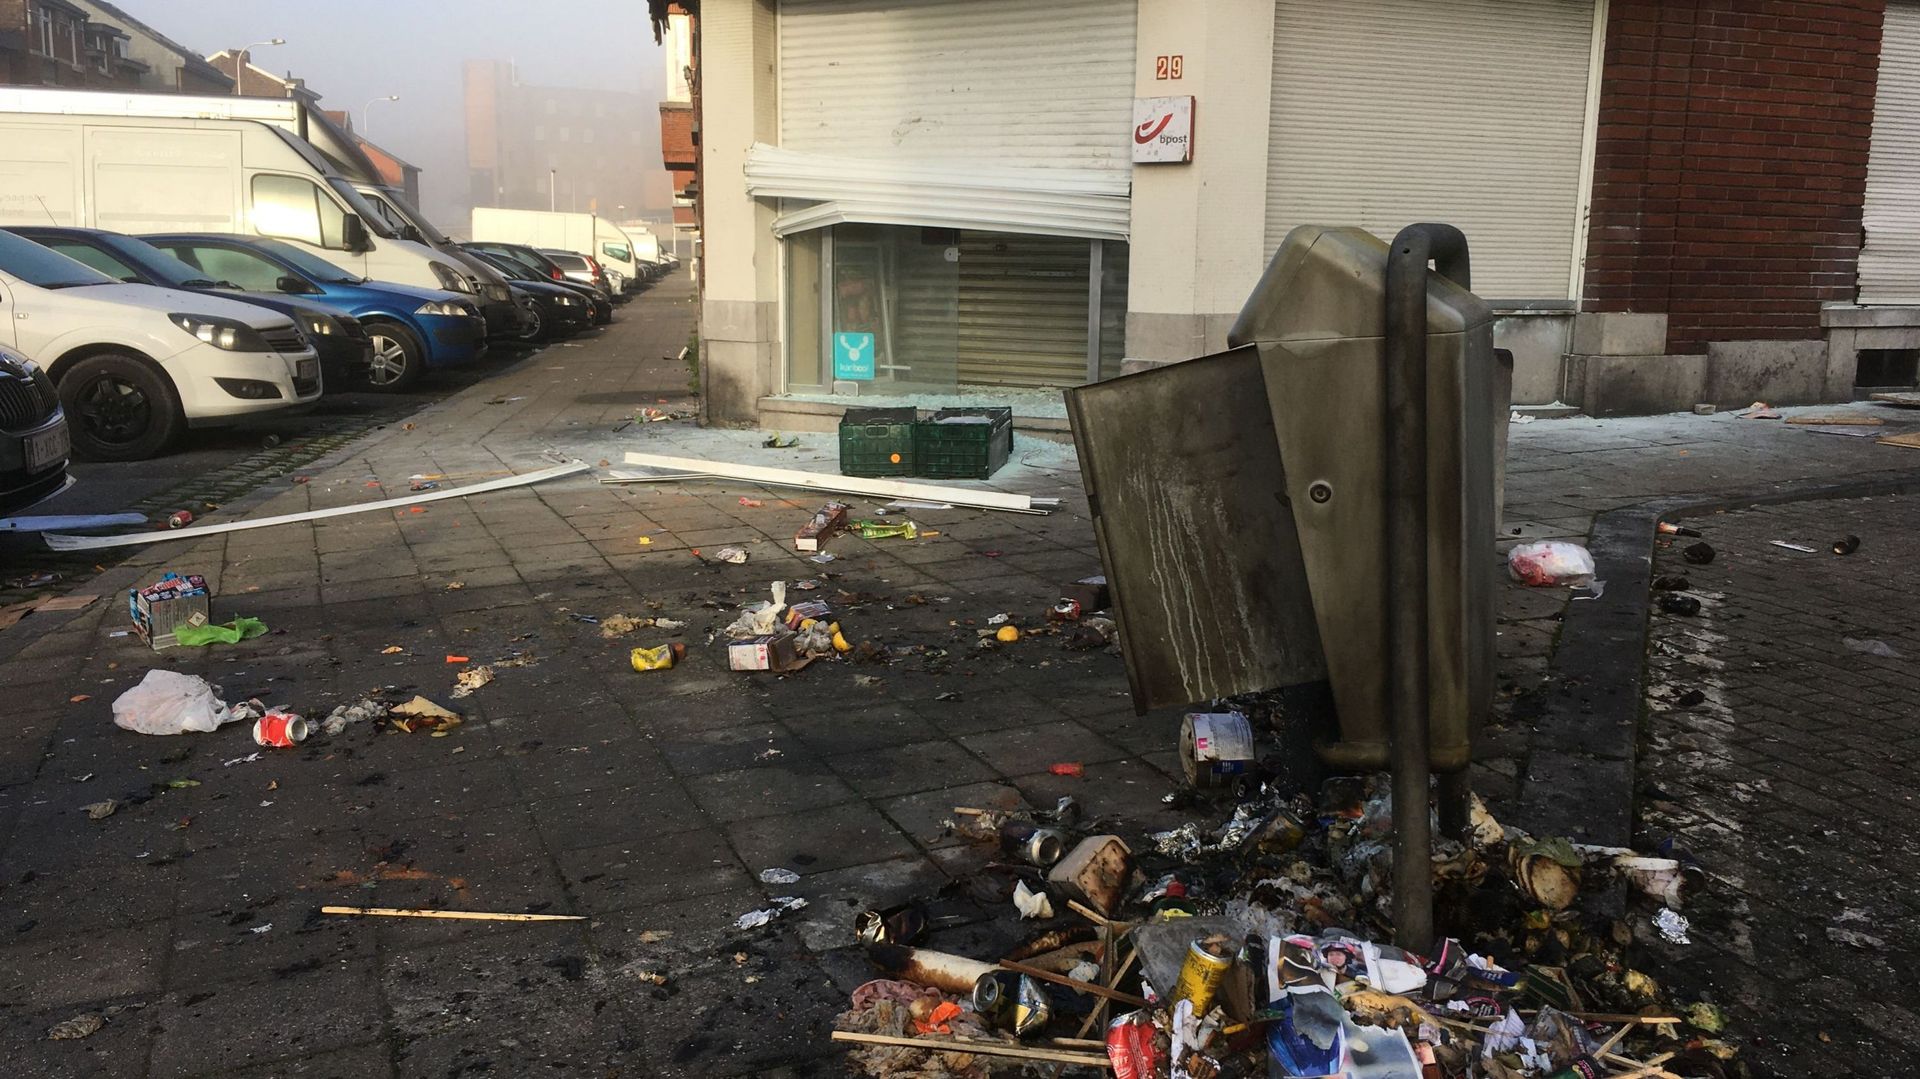 Librairie saccagée, poubelles en feu: une nuit du Nouvel An agitée au quartier de Bressoux-Droixhe à Liège